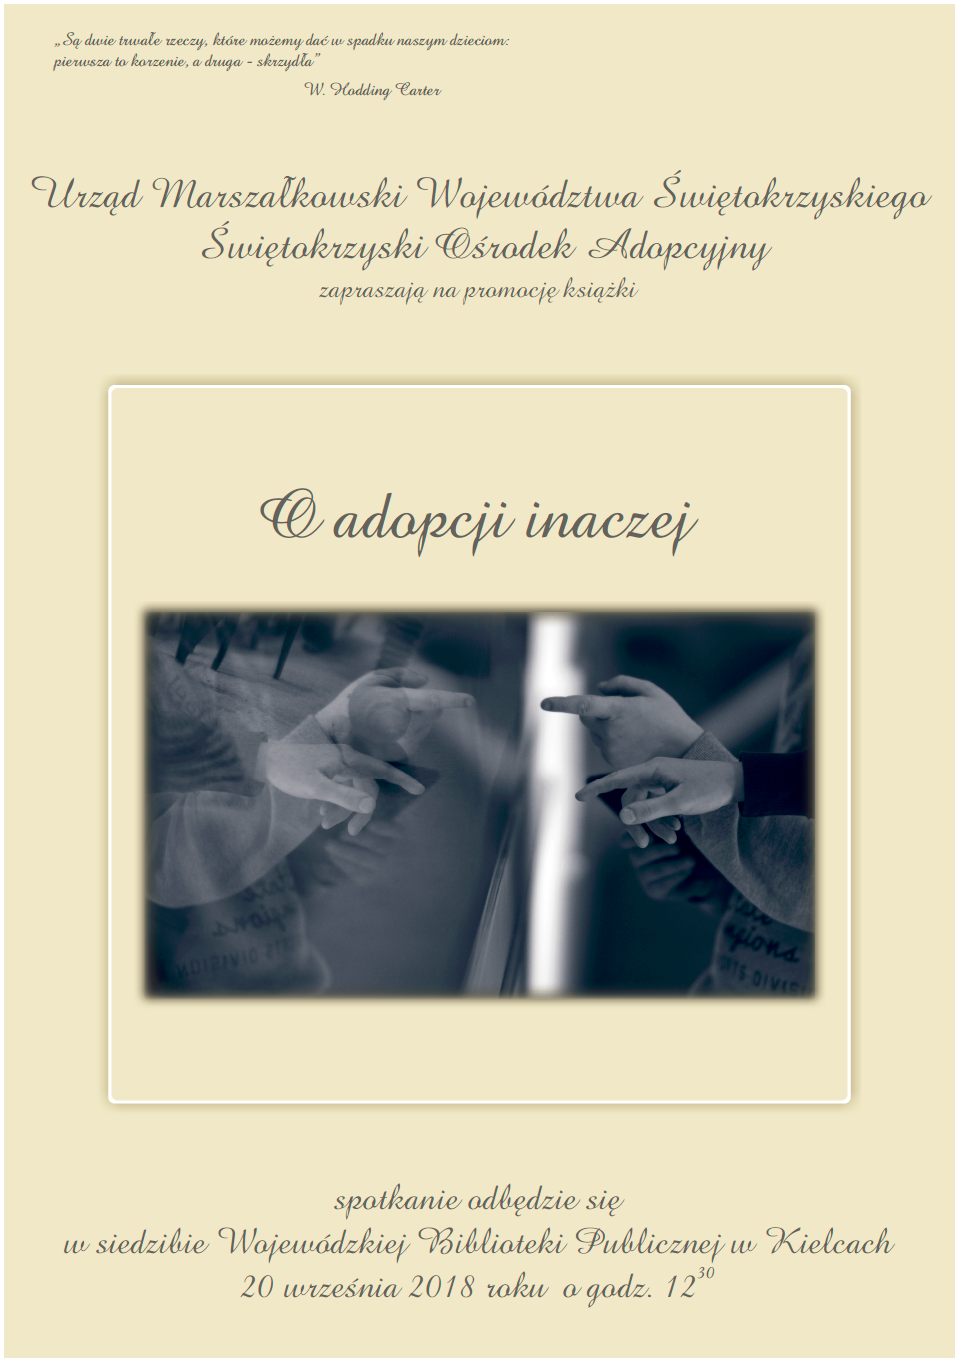 Plakat promujący książkę "O Adopcji Inaczej"